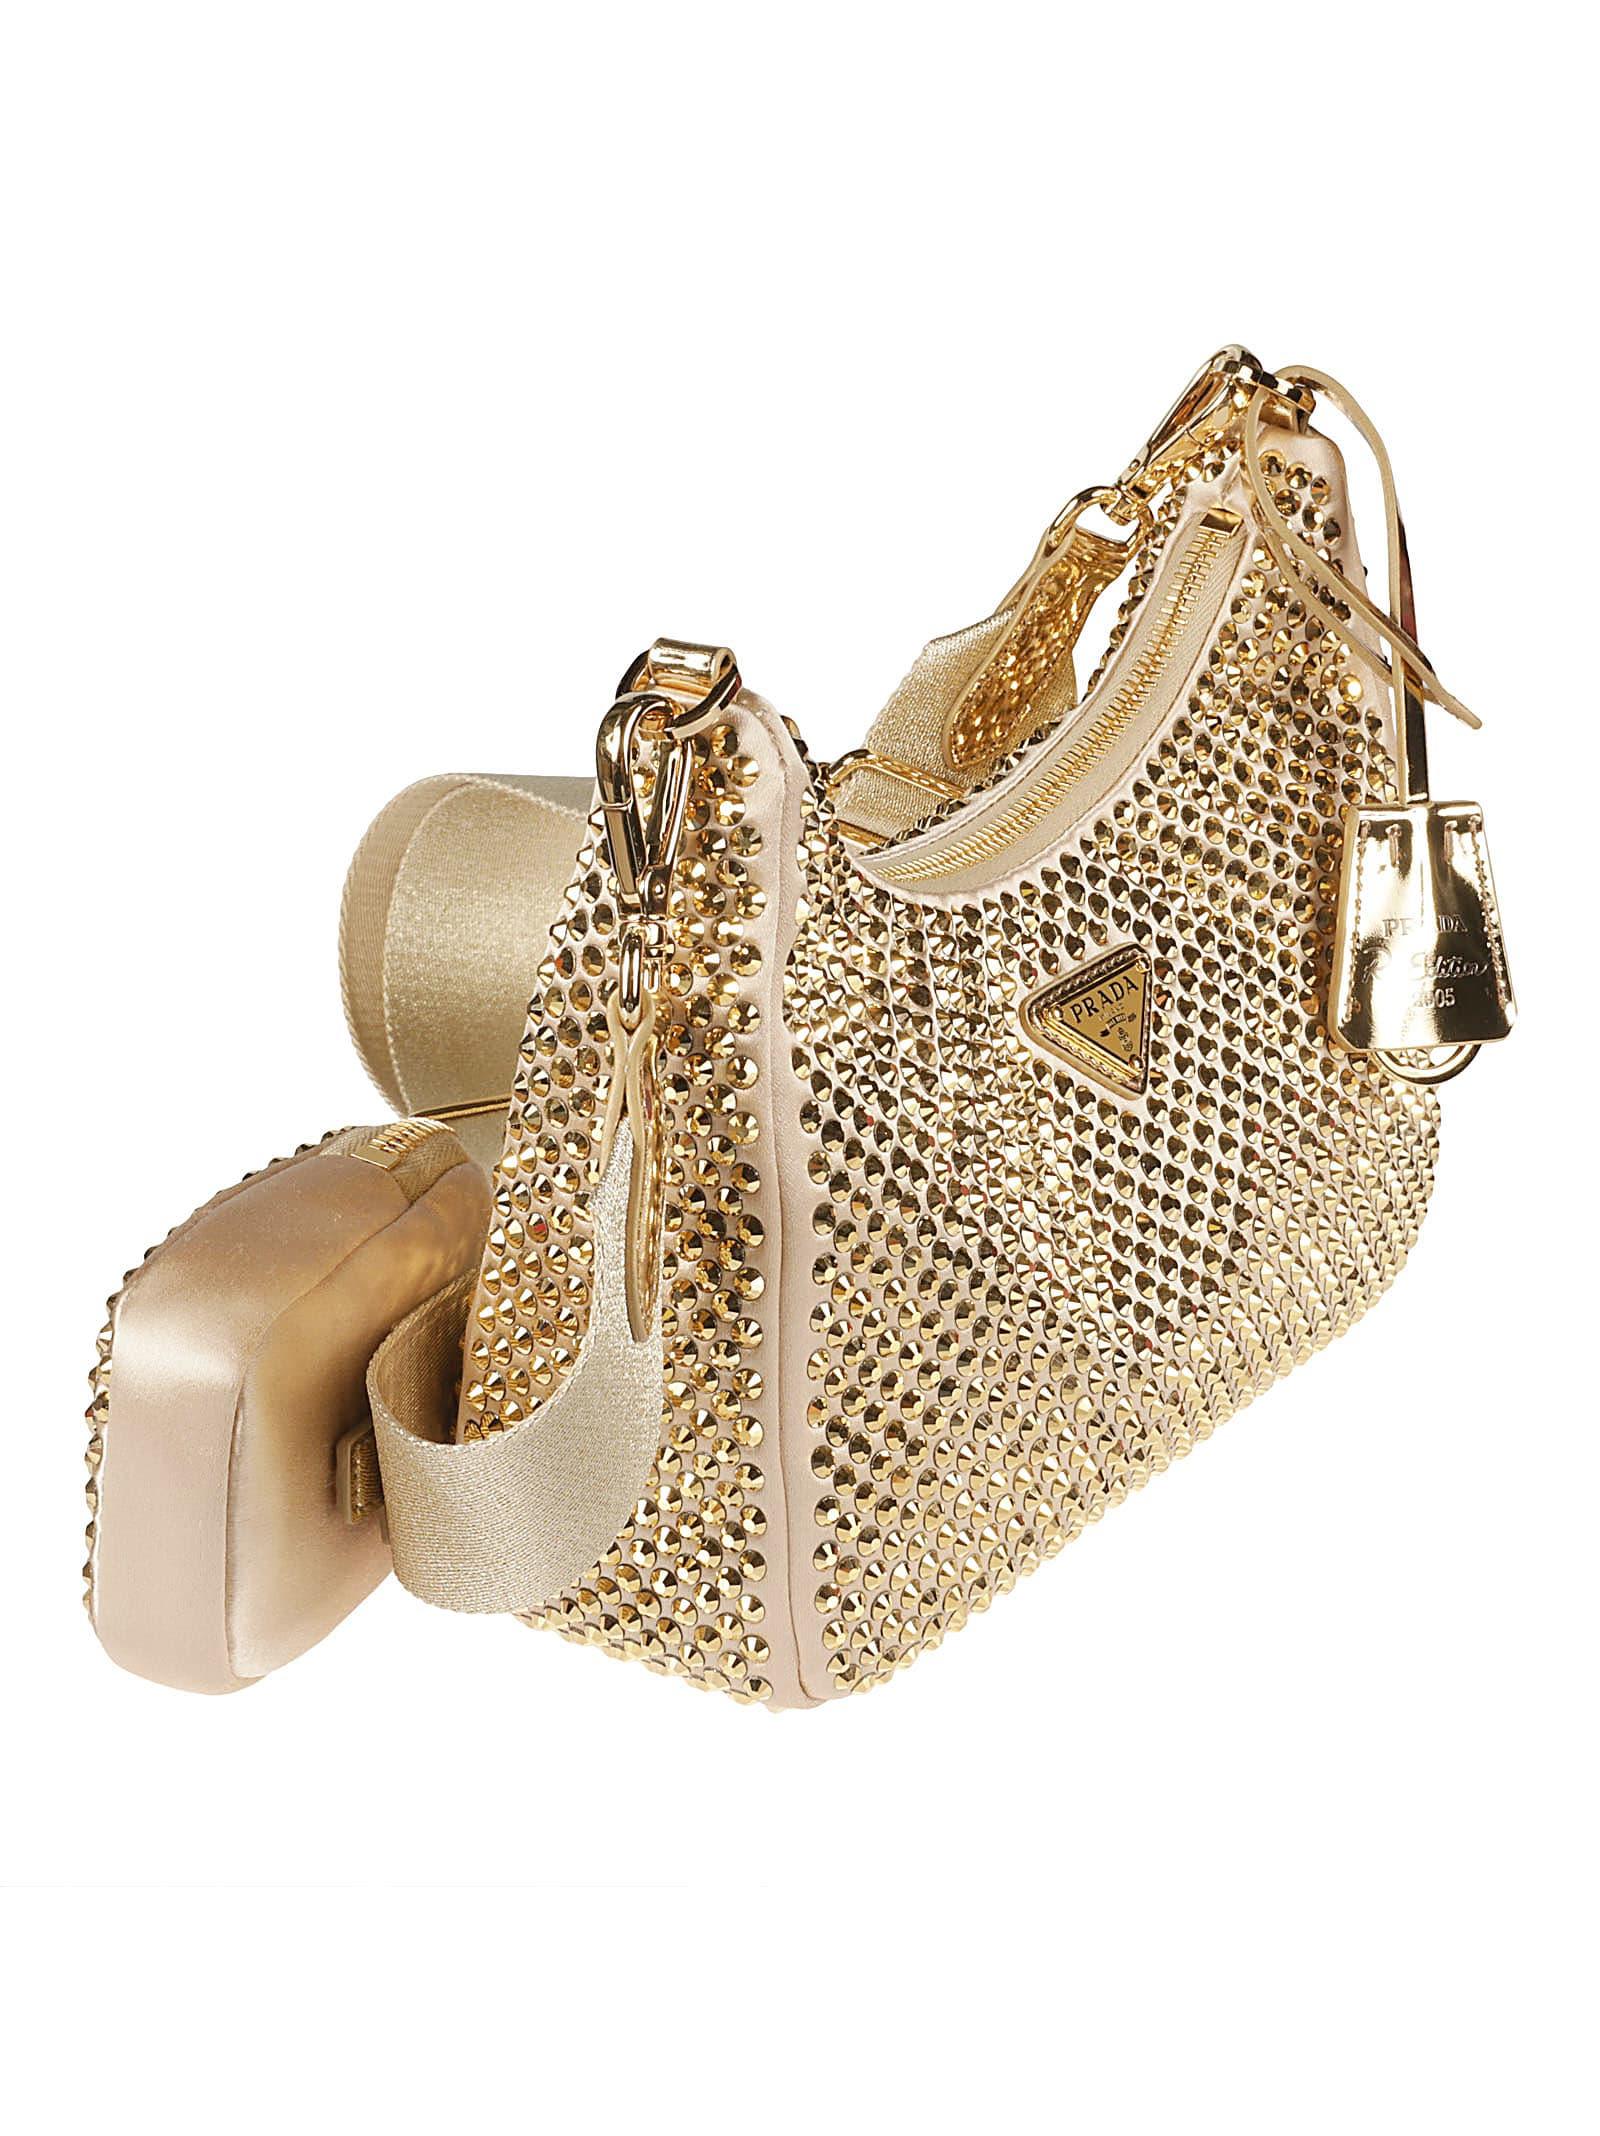 Prada Re-Edition 2005 crystal-embellished shoulder bag, Gold